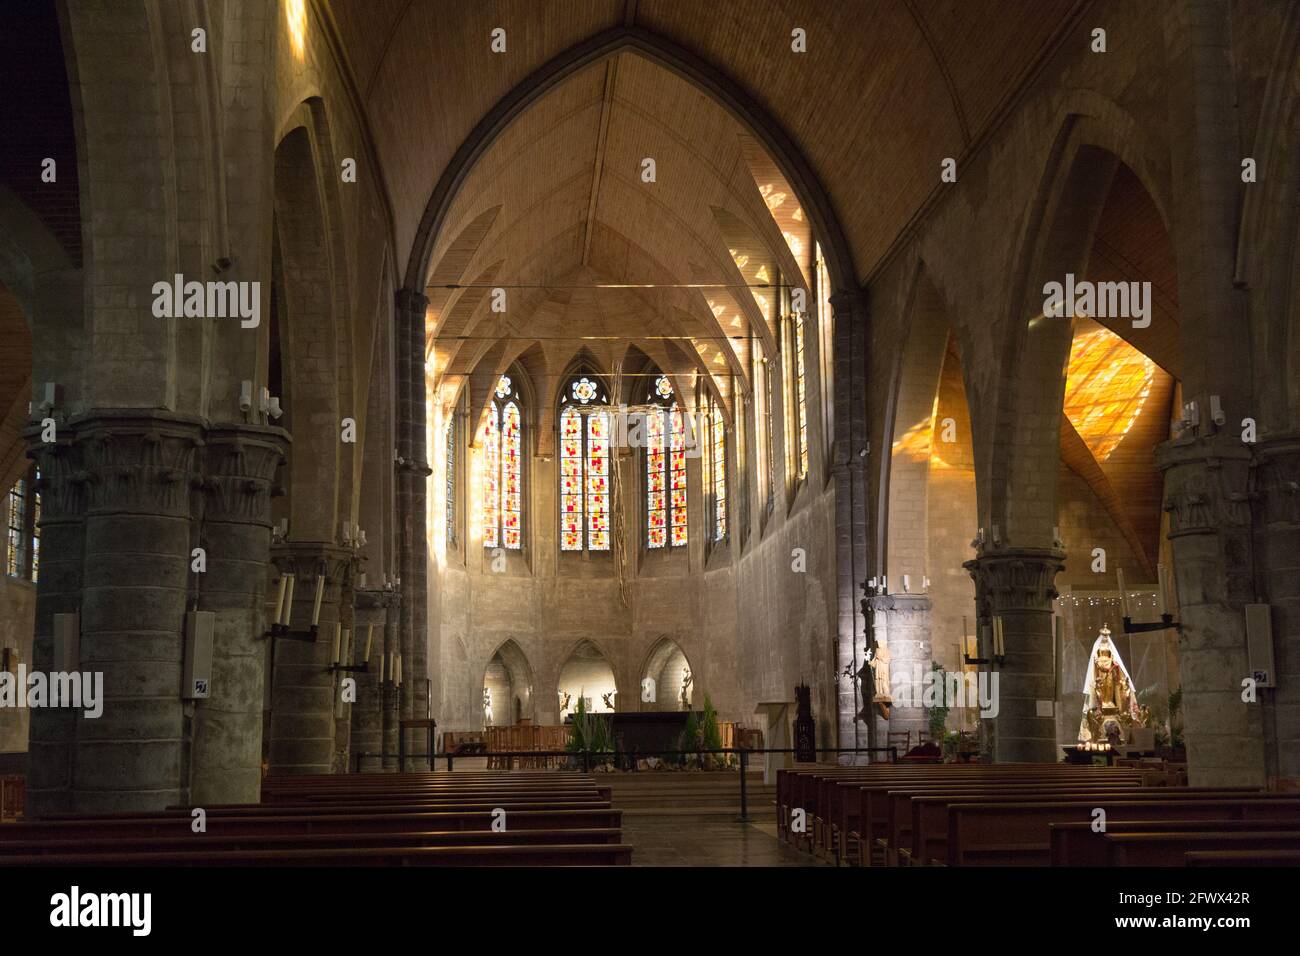 L'intérieur de l'église gothique de Saint Gery (Gaugericus) avec des arches pointues. Valenciennes, France, 2017/01/06. Banque D'Images